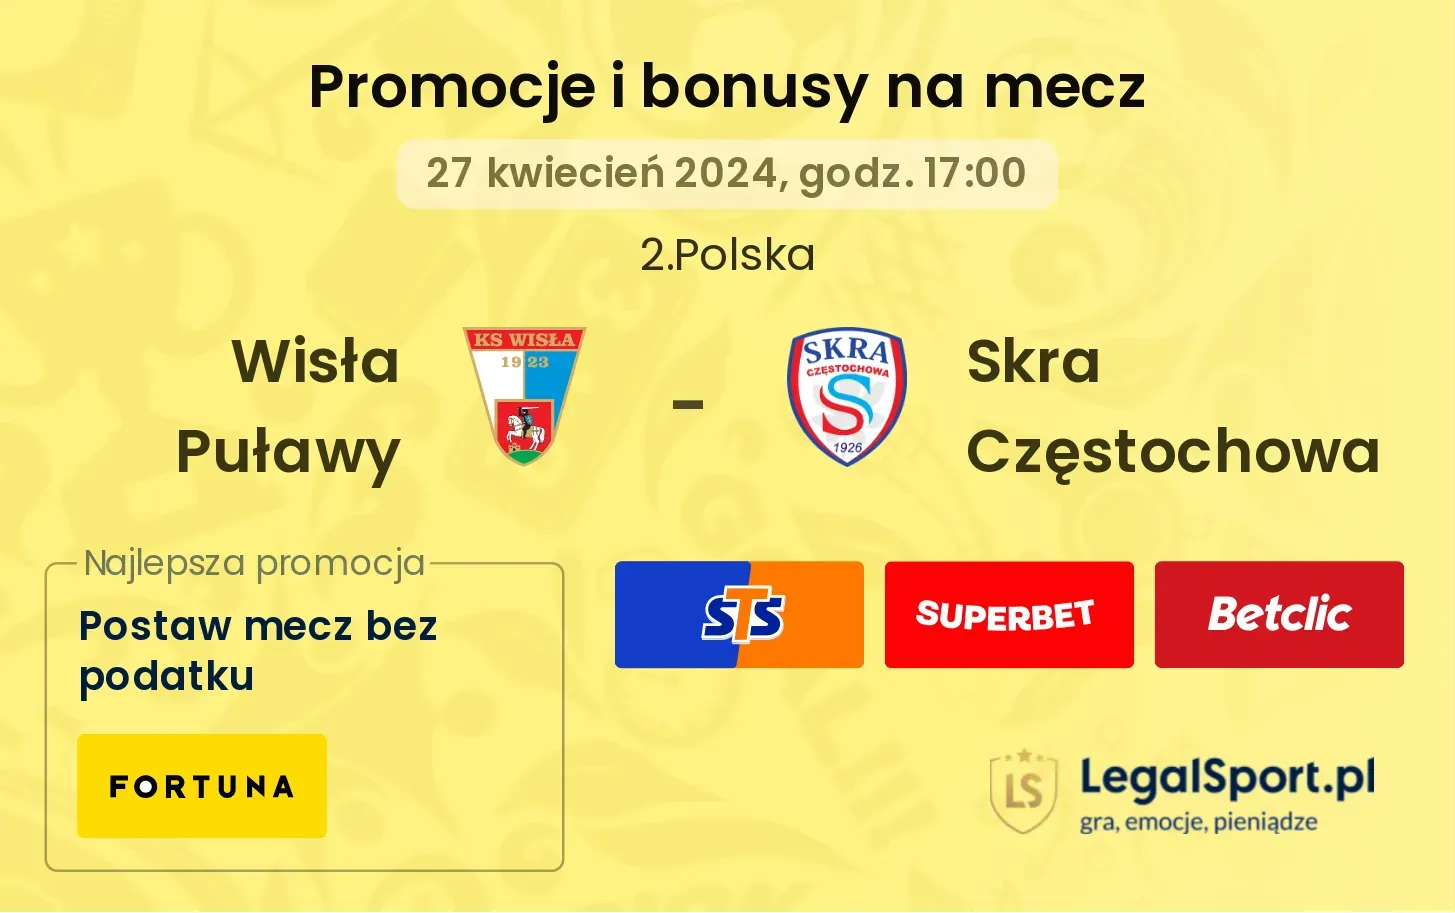 Wisła Puławy - Skra Częstochowa promocje bonusy na mecz